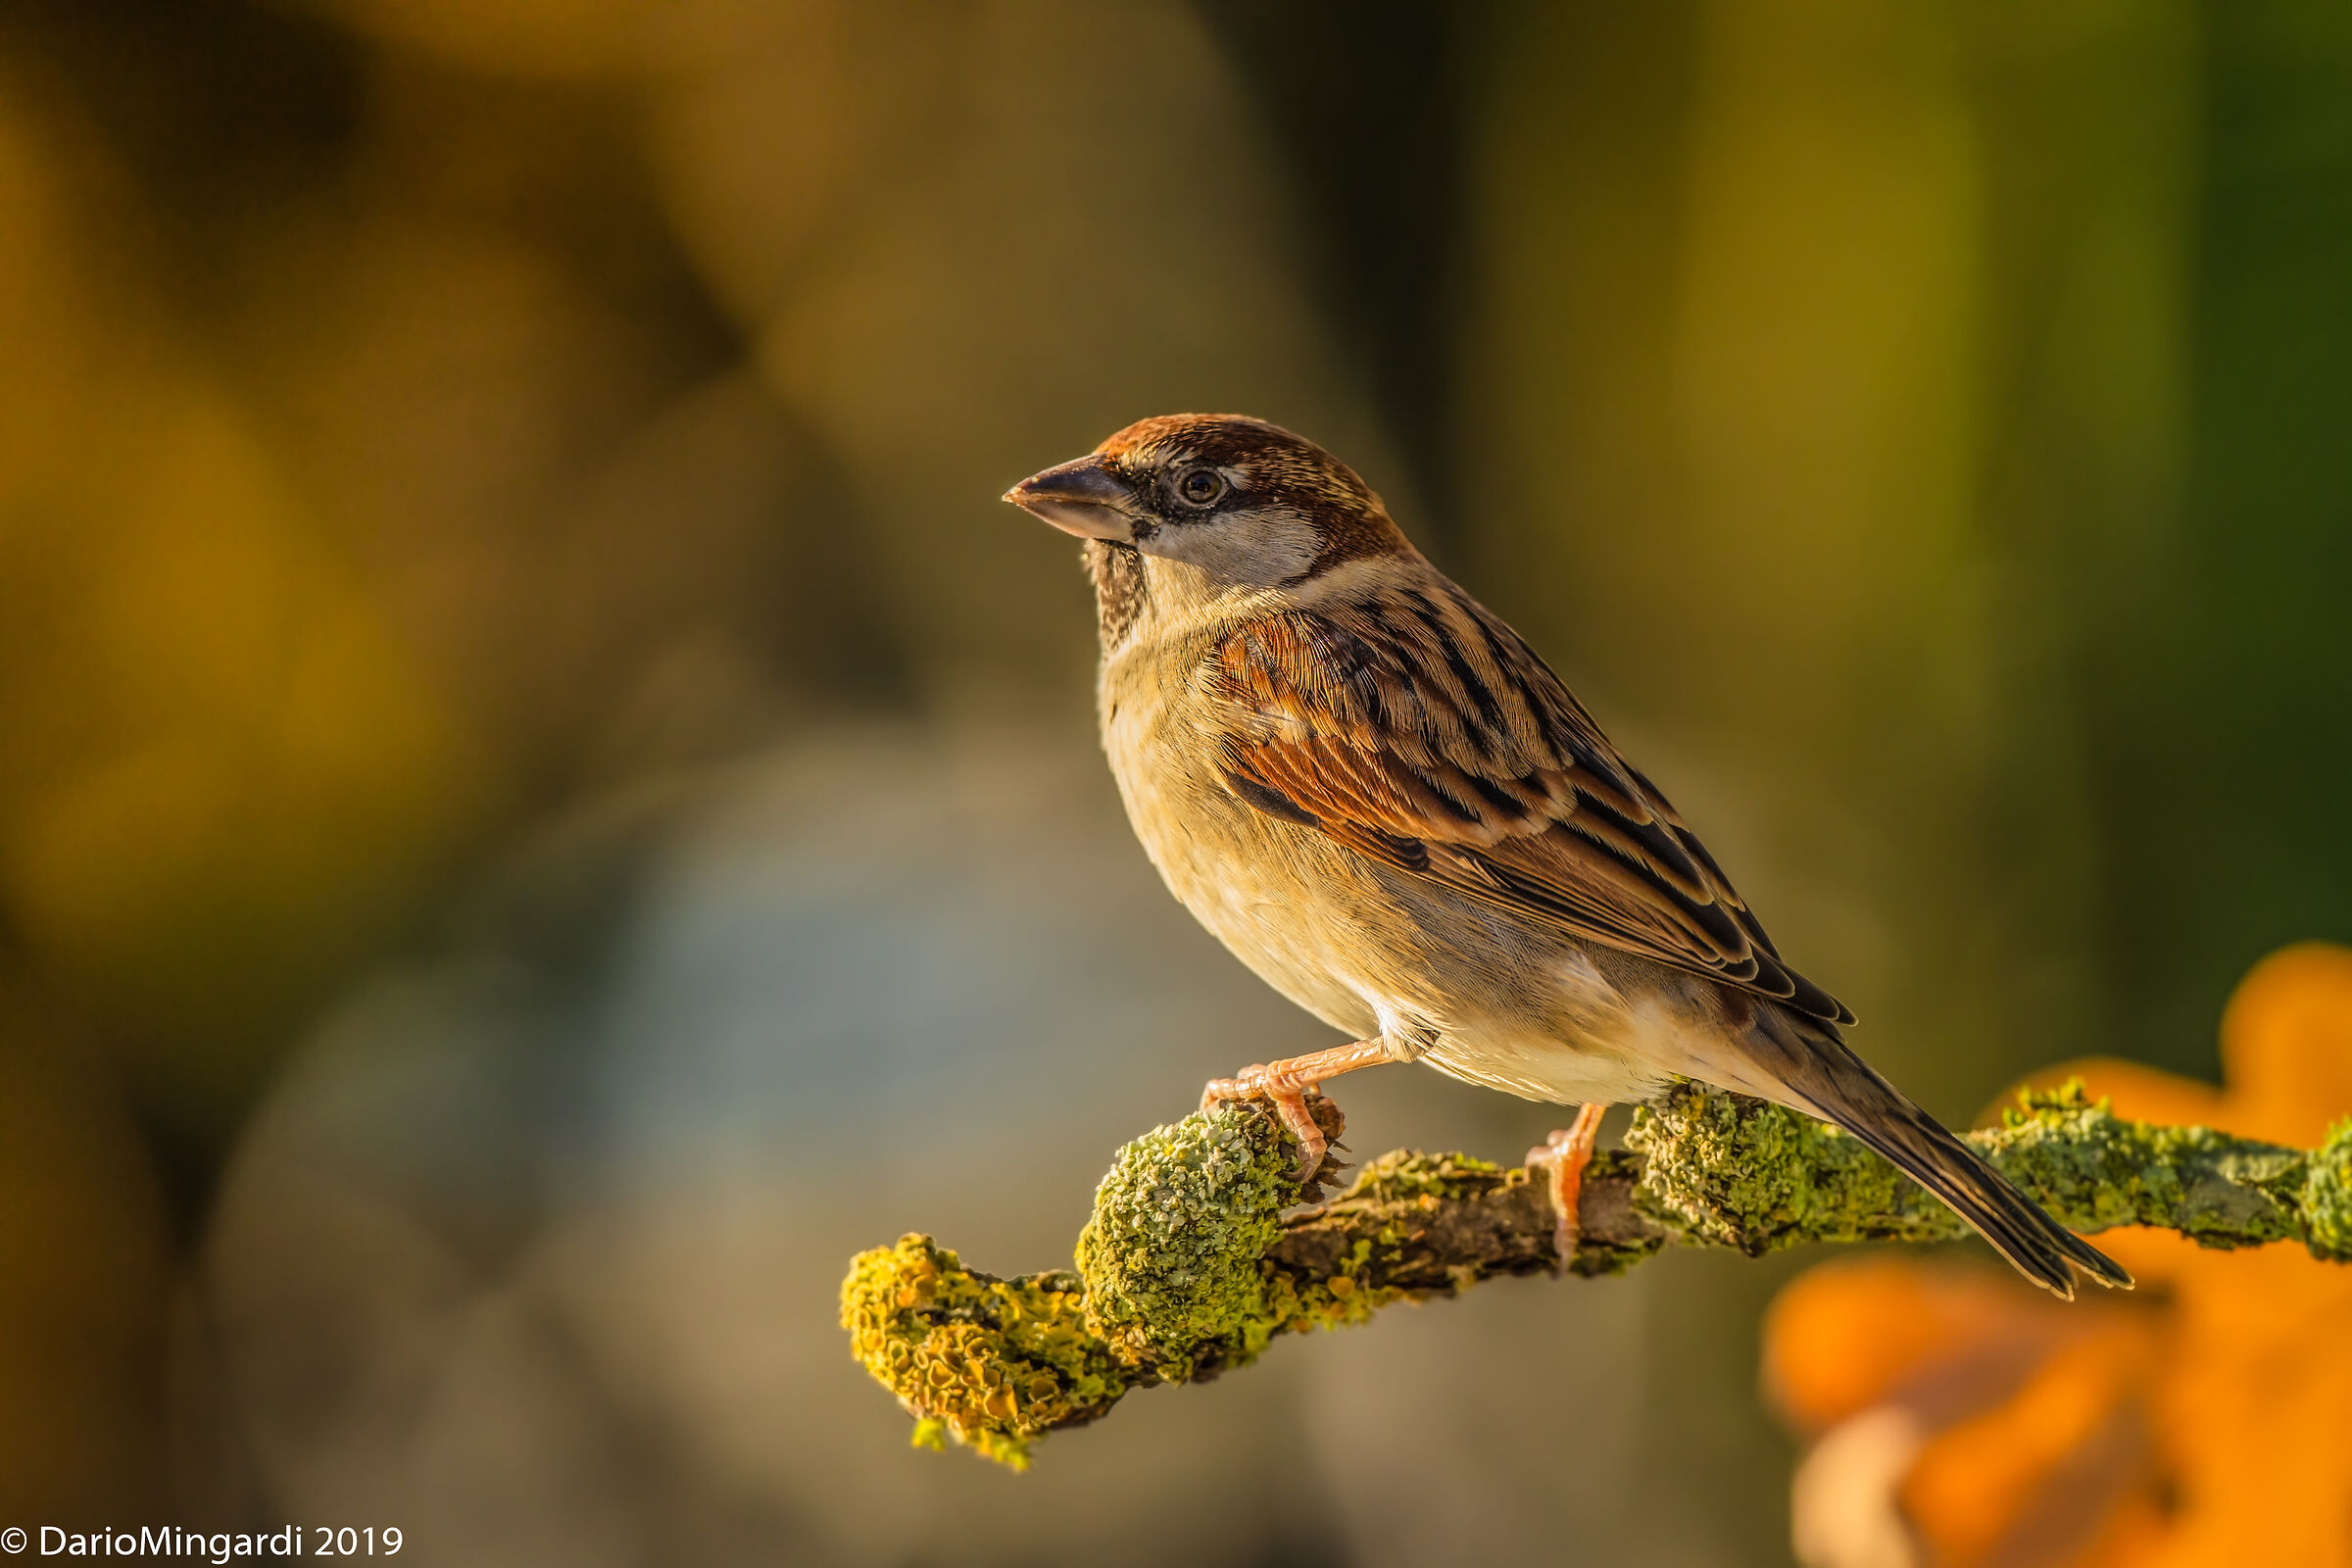 A cute sparrow ...